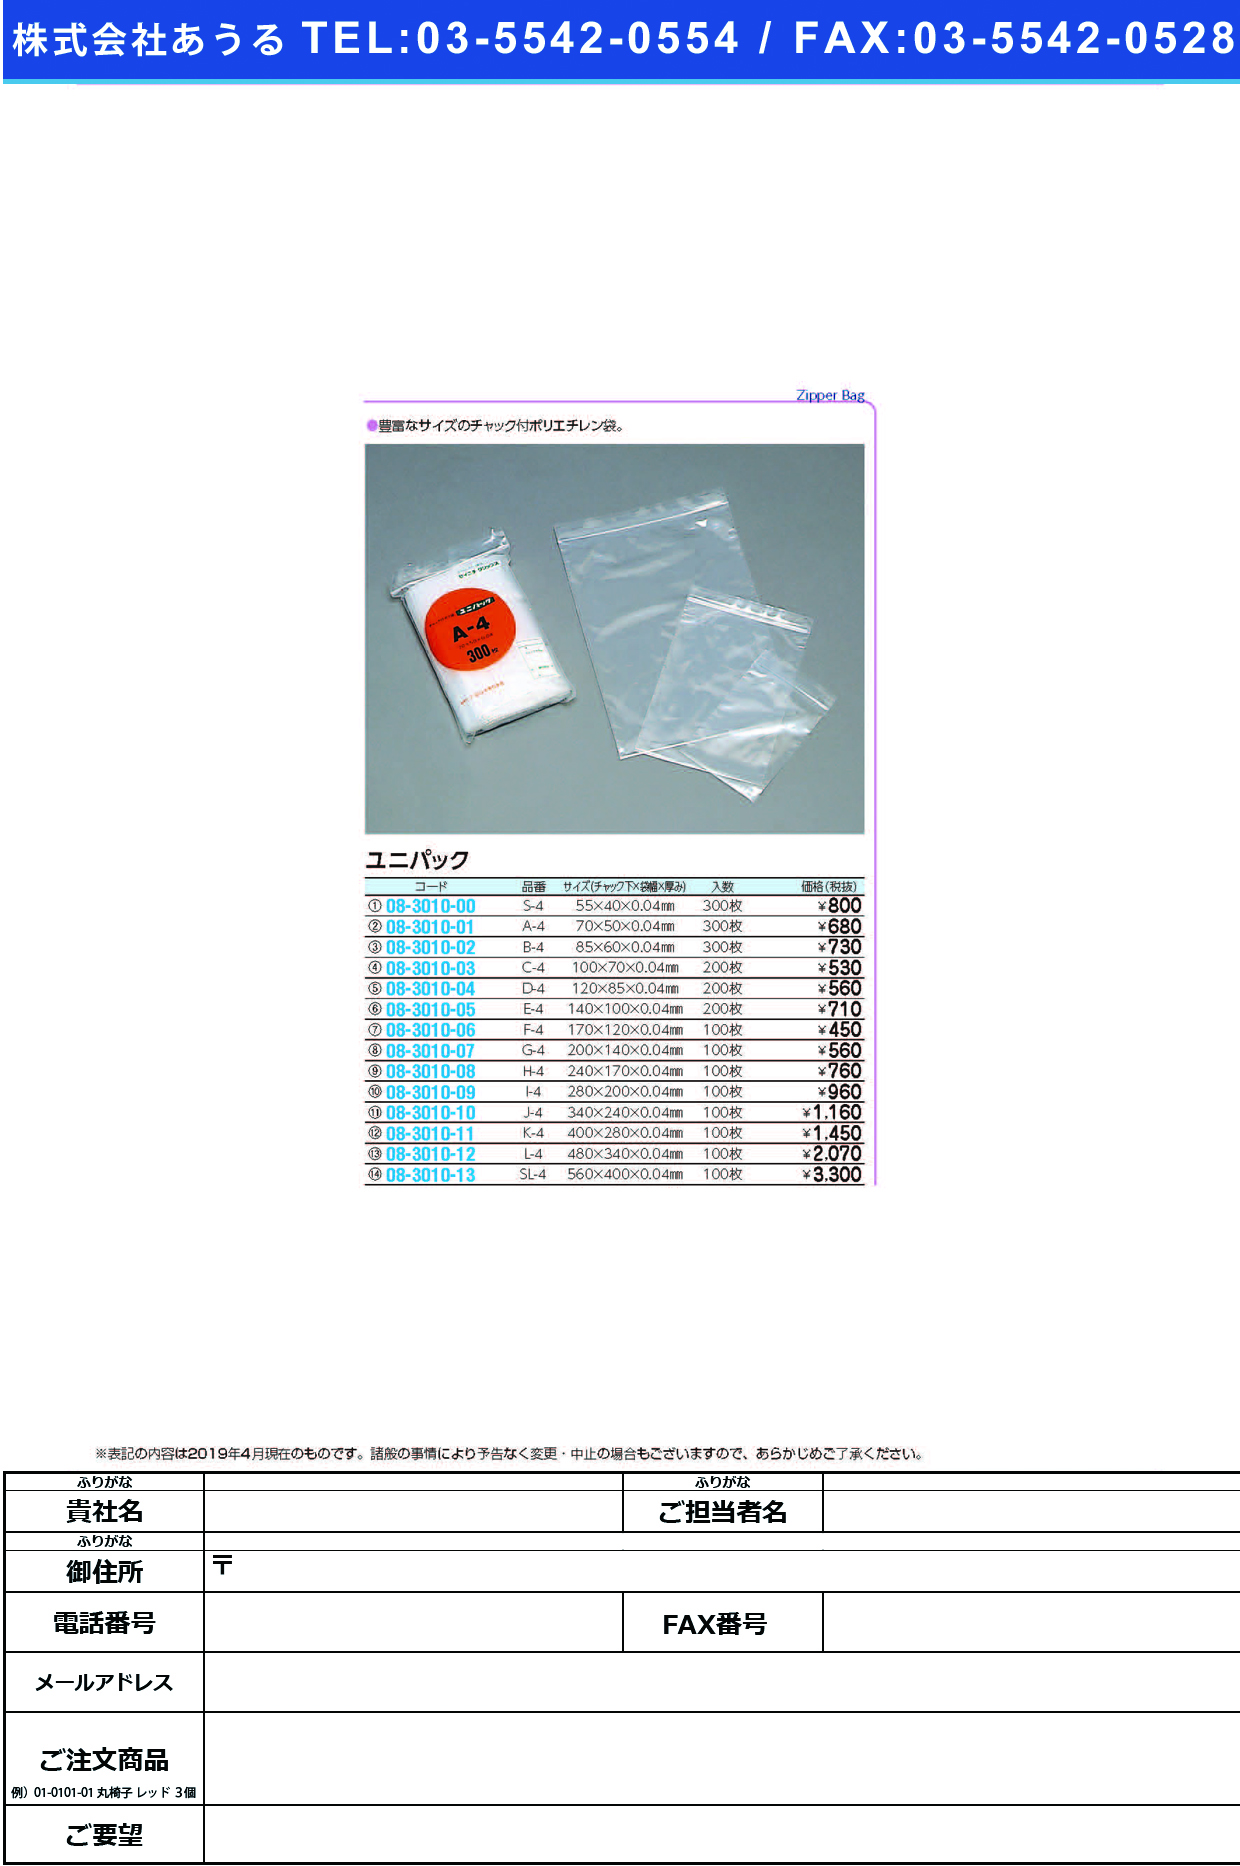 (08-3010-01)ユニパック A-4(70X50MM)300ﾏｲ ﾕﾆﾊﾟｯｸ【1袋単位】【2019年カタログ商品】